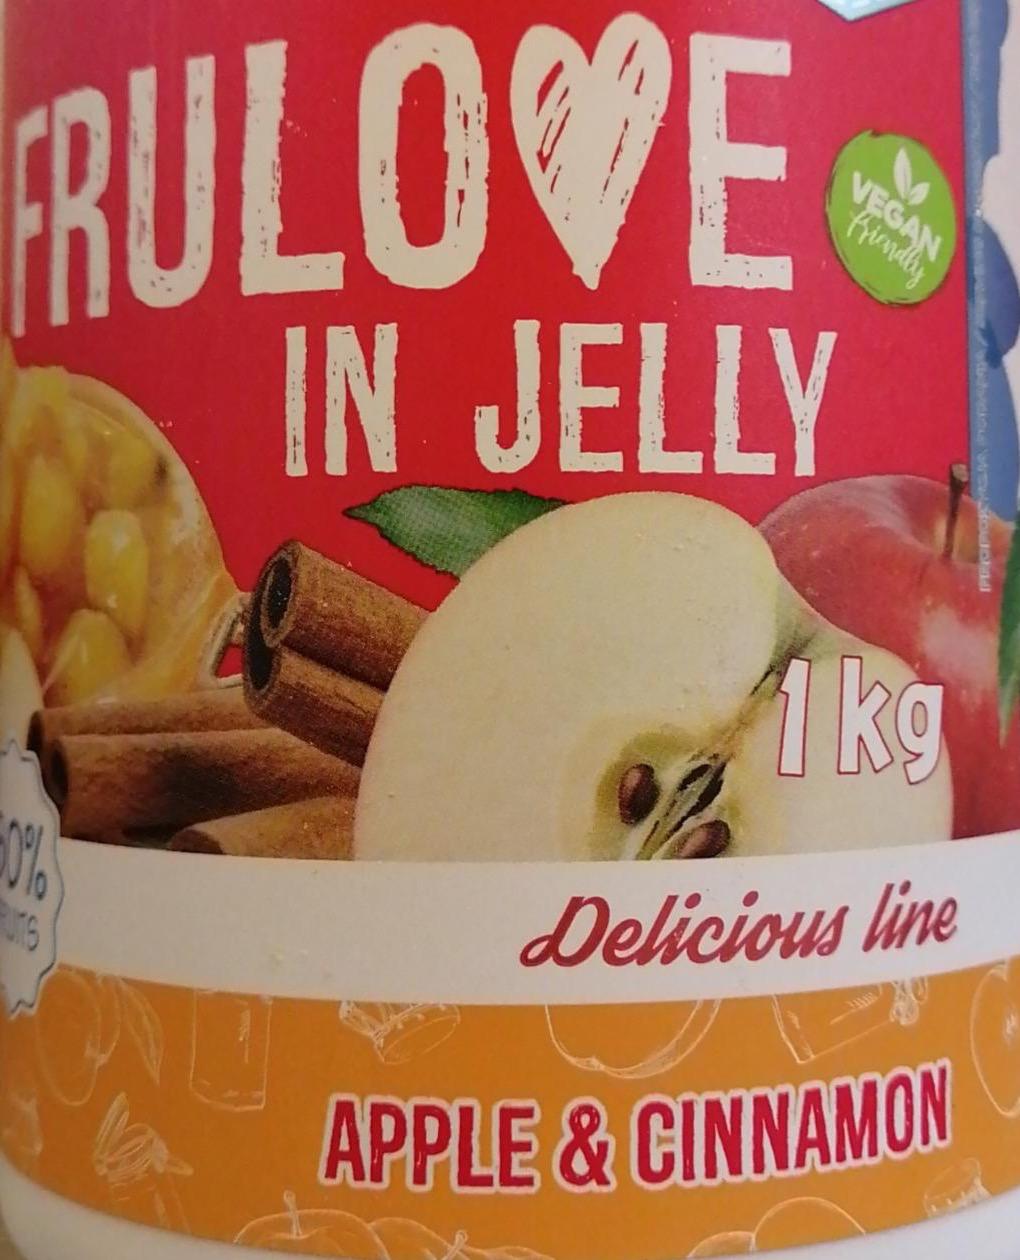 Zdjęcia - Frulove in jelly apple & cinnamon